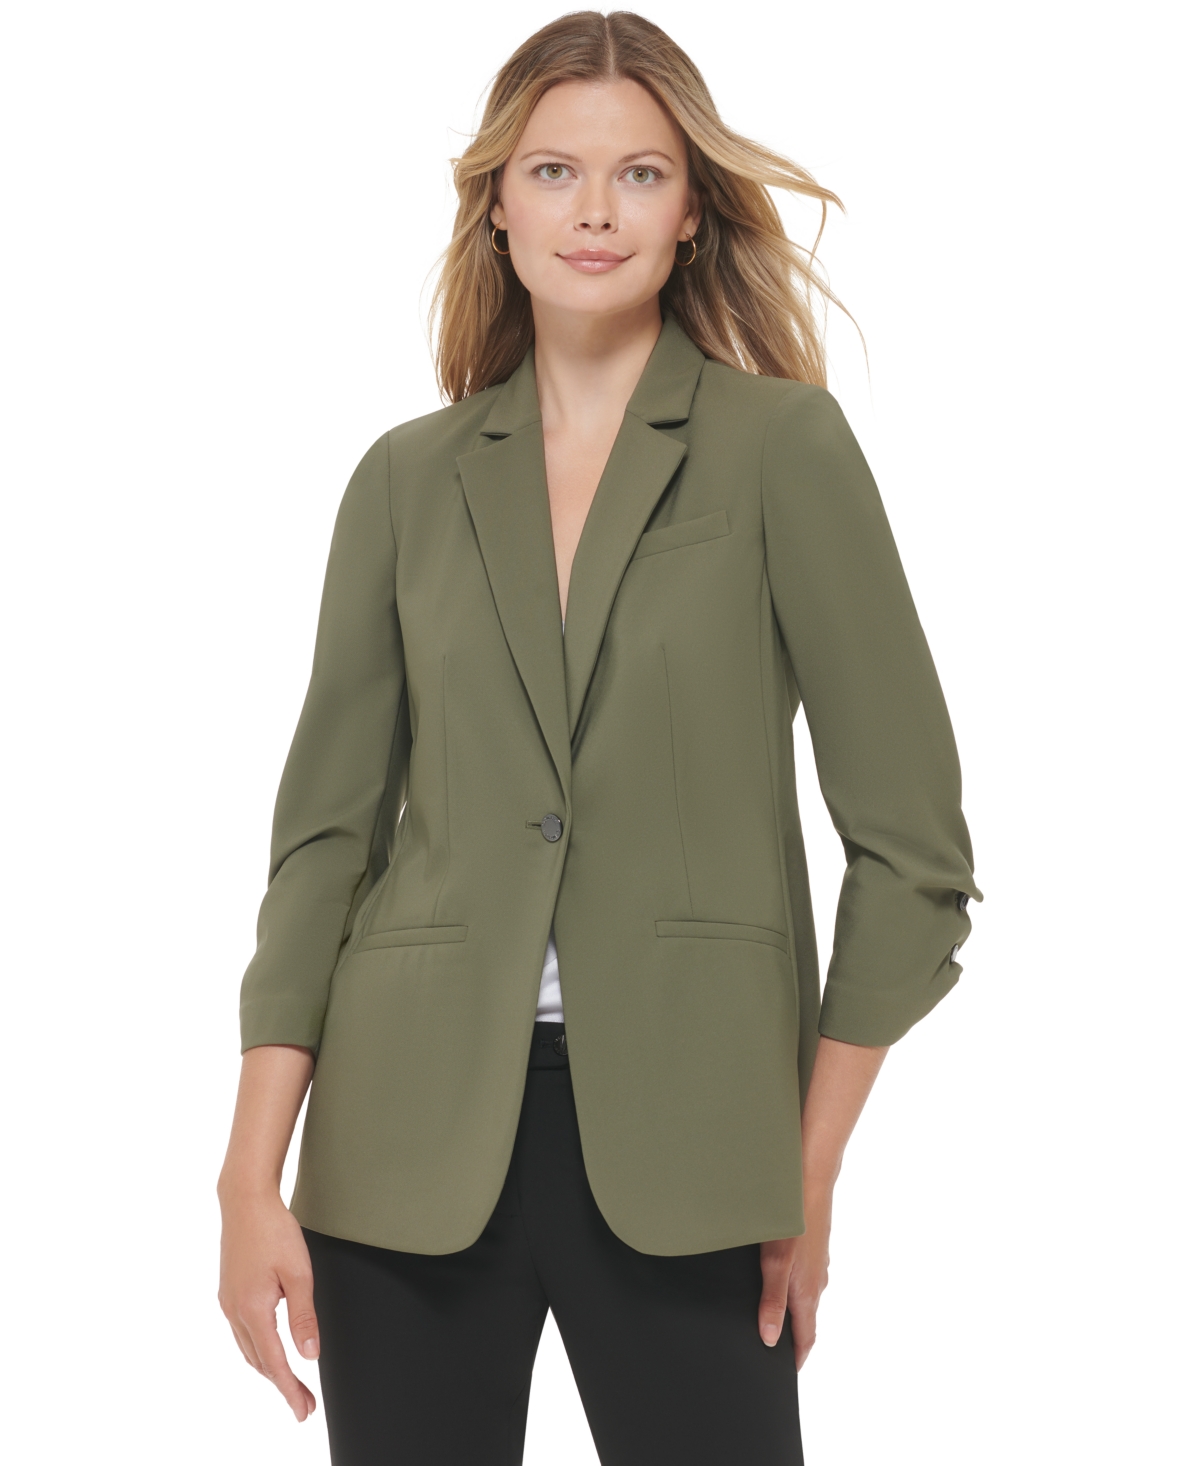 Calvin Klein Women's Infinite Stretch 3/4 Sleeve One Button Blazer